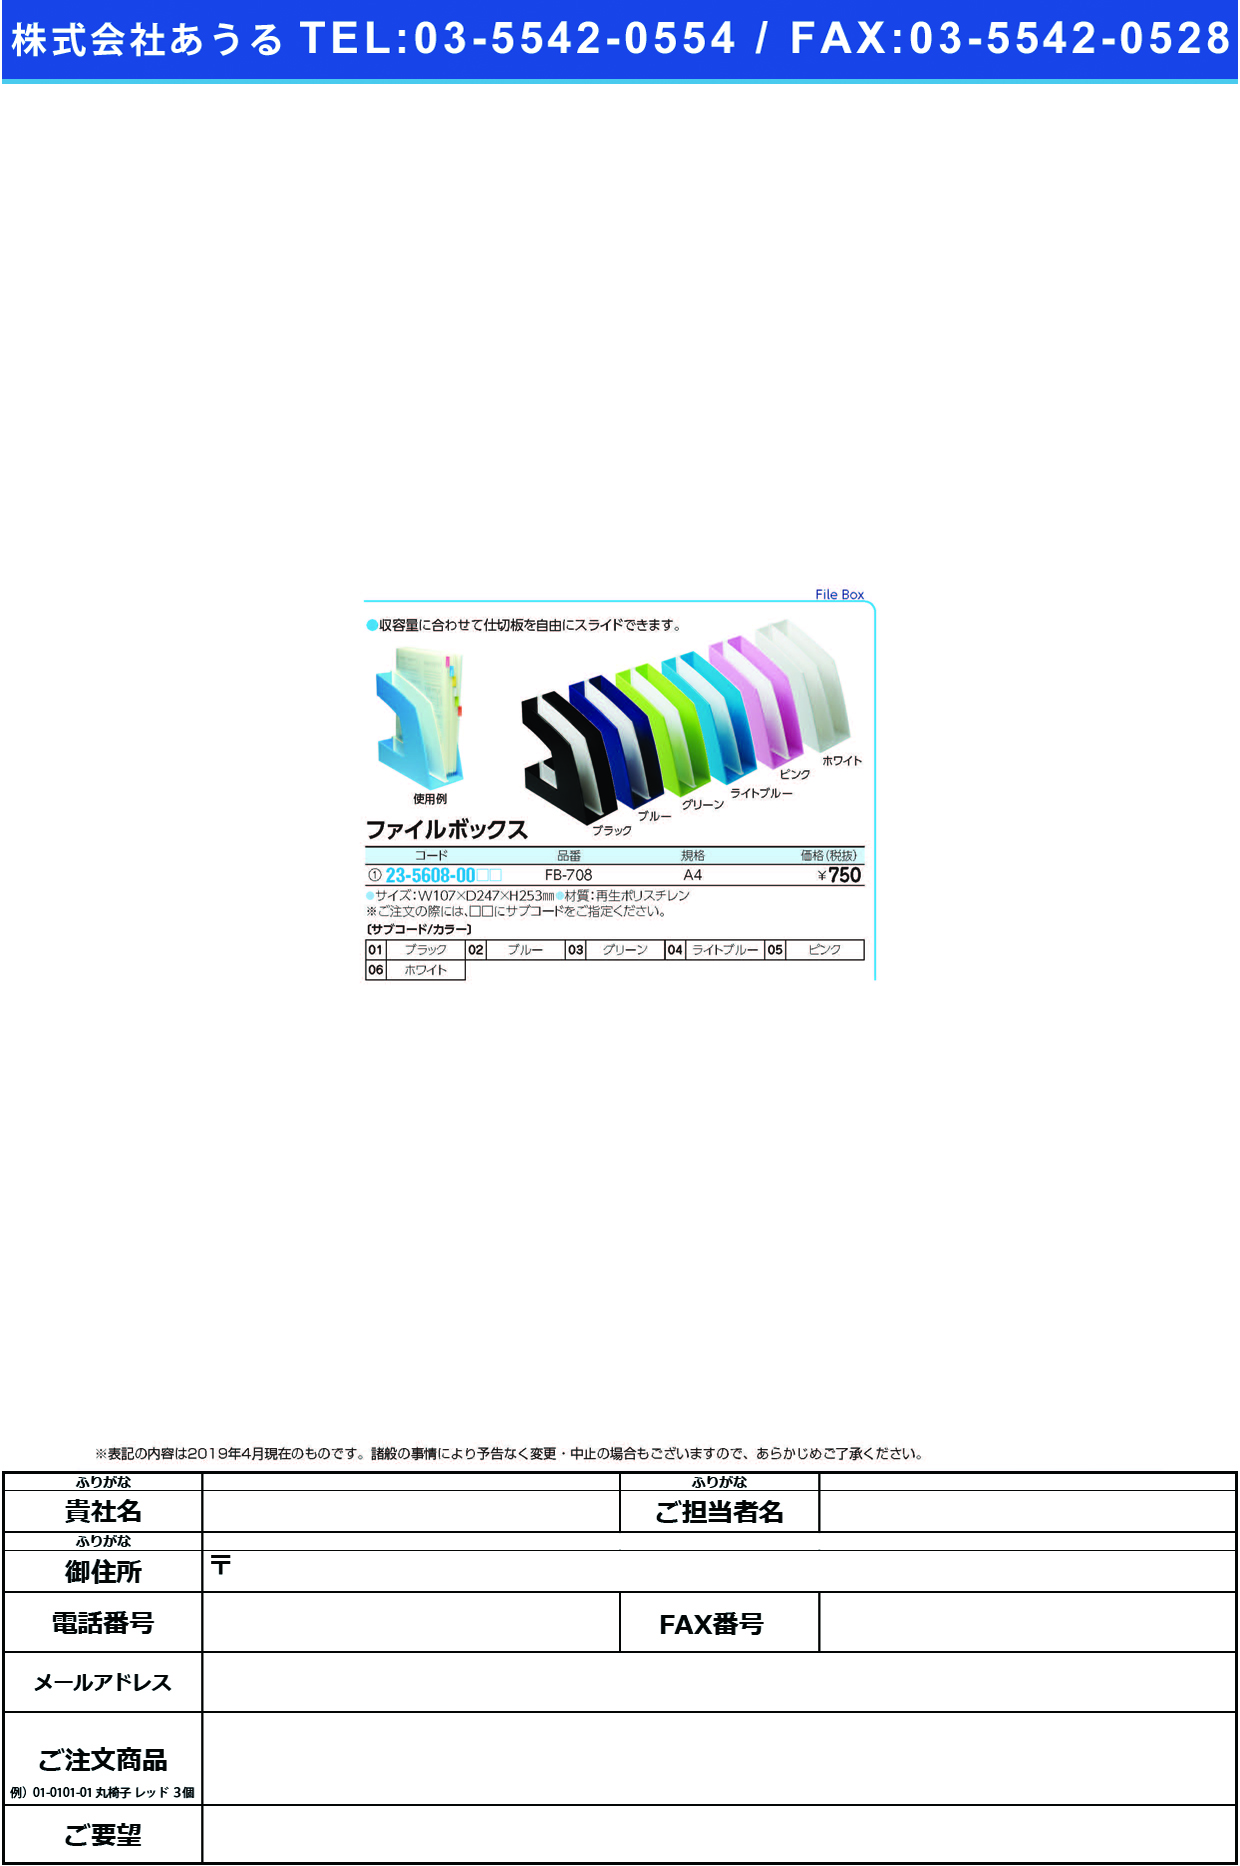 (23-5608-00)ファイルボックス FB-708(A4) ﾌｧｲﾙﾎﾞｯｸｽ ブルー【1個単位】【2019年カタログ商品】